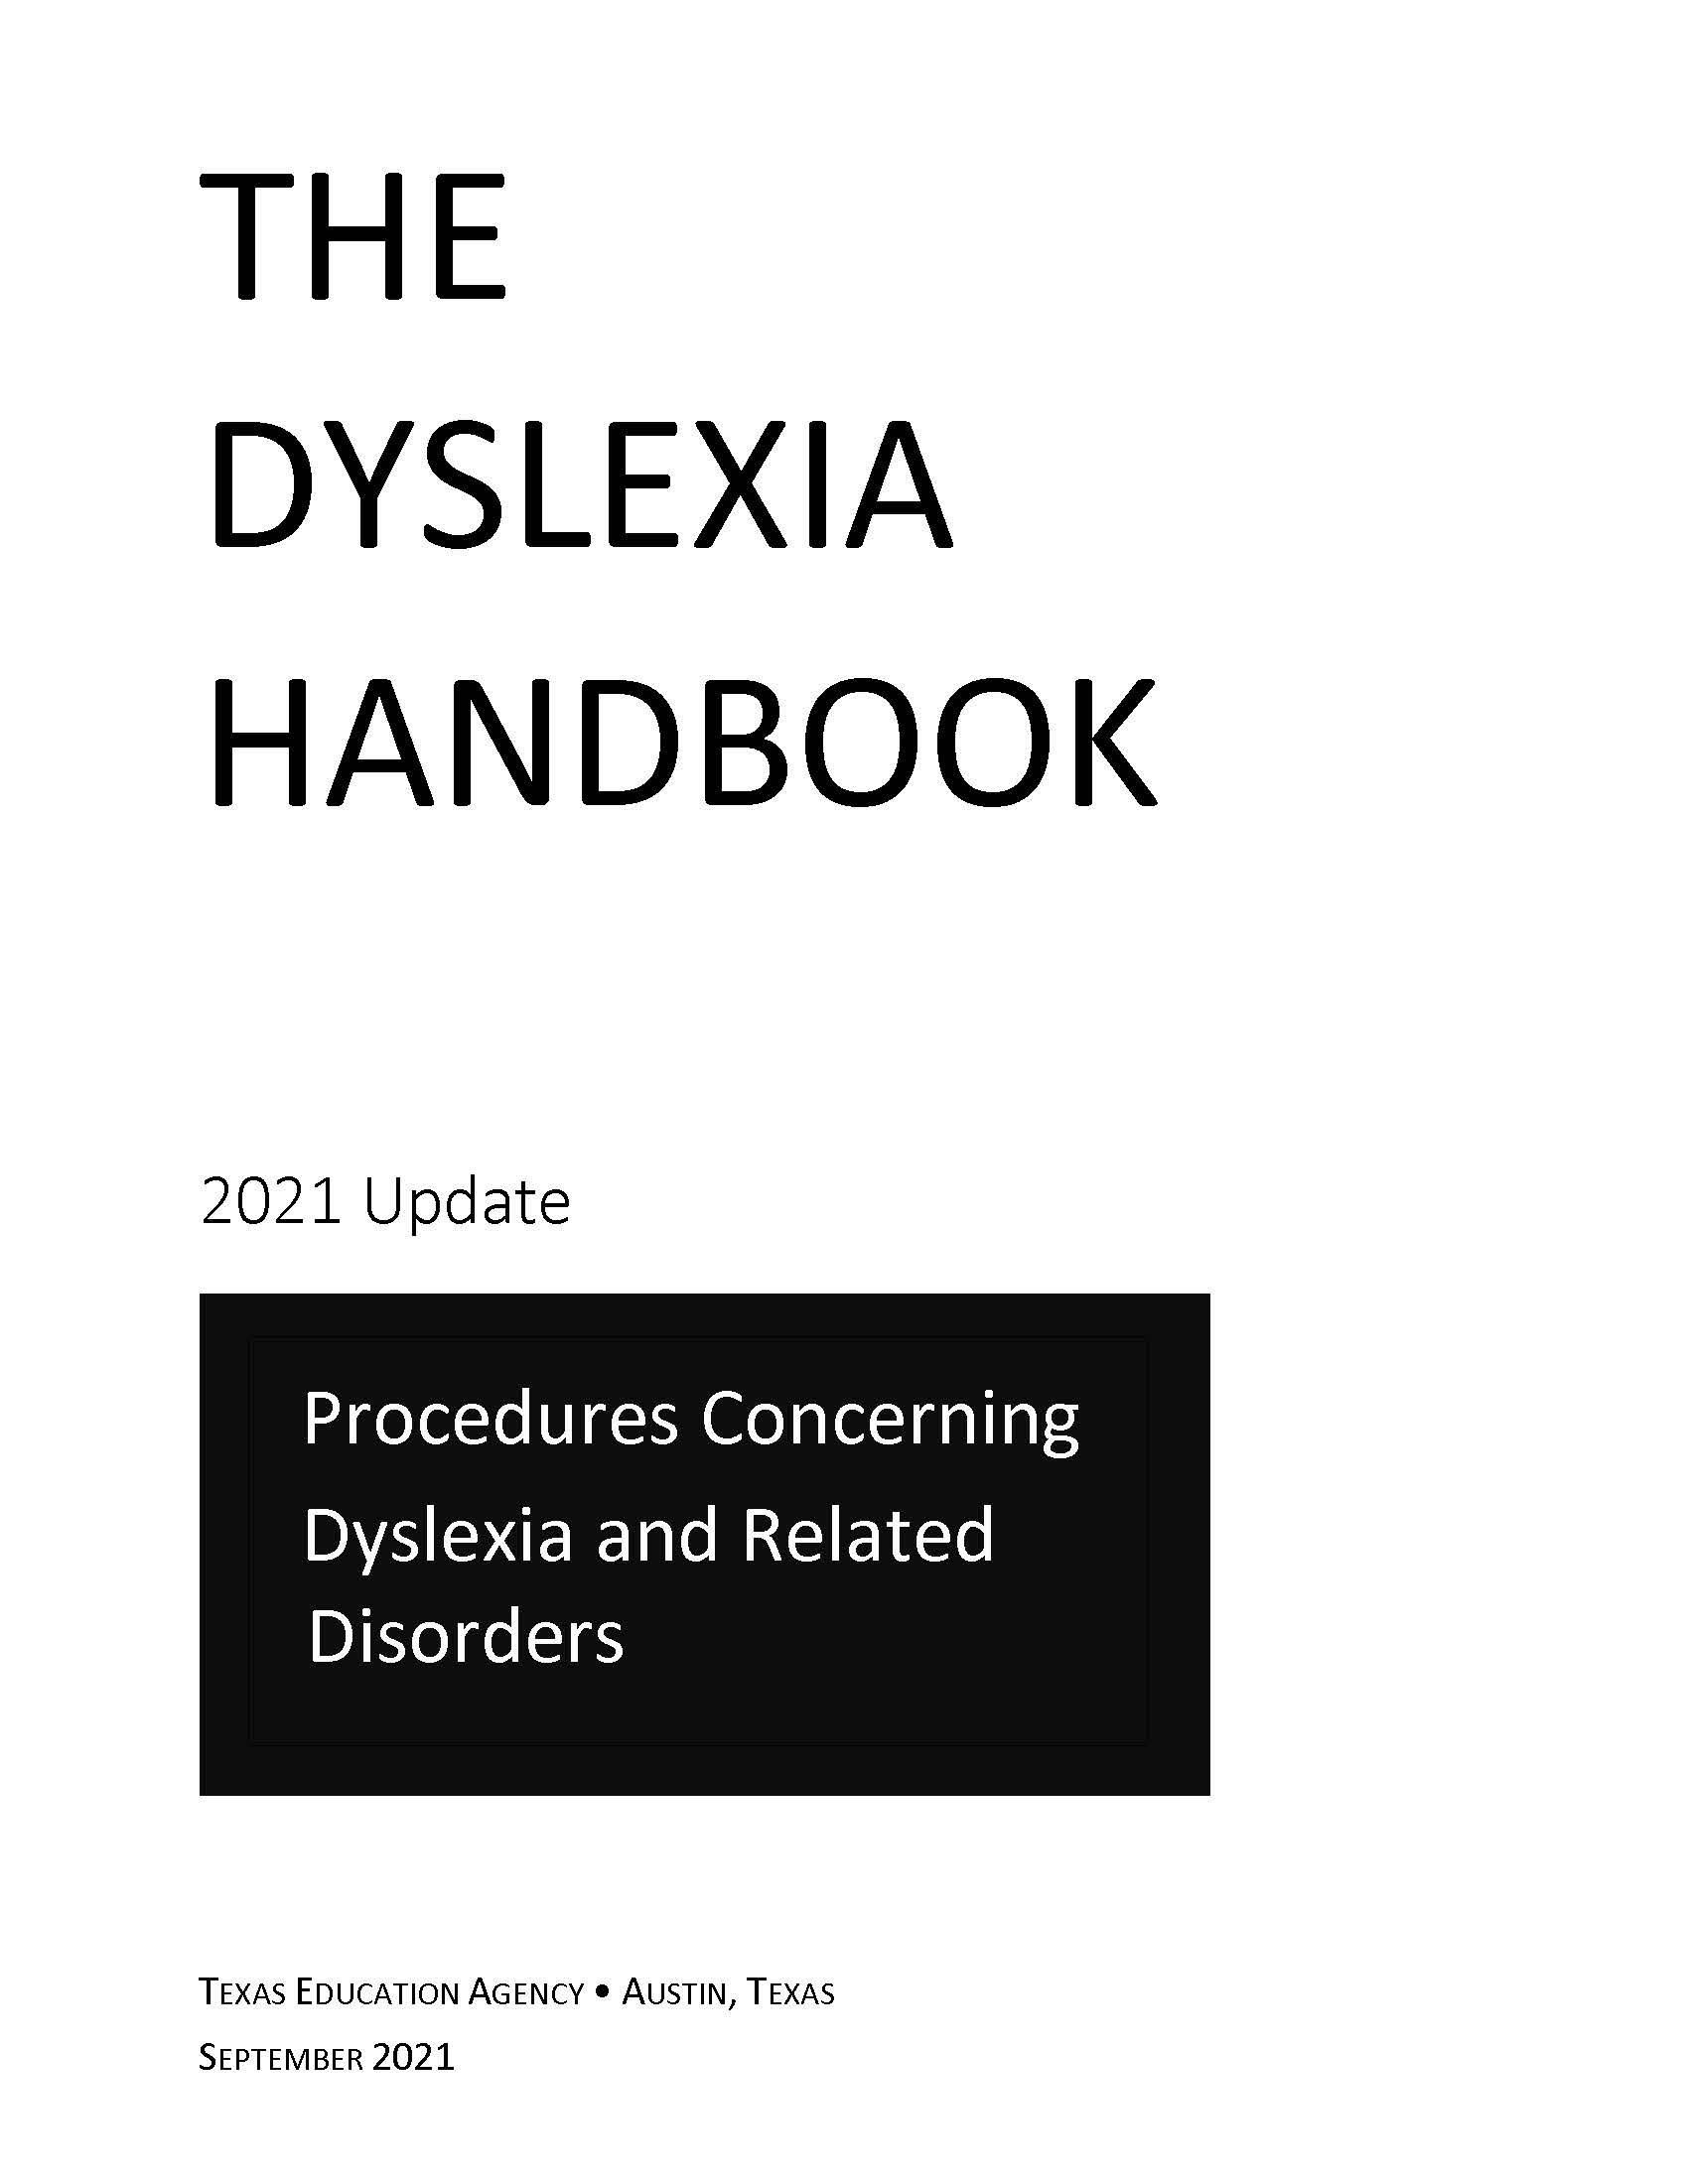 The Dyslexia Handbook 2021 Update